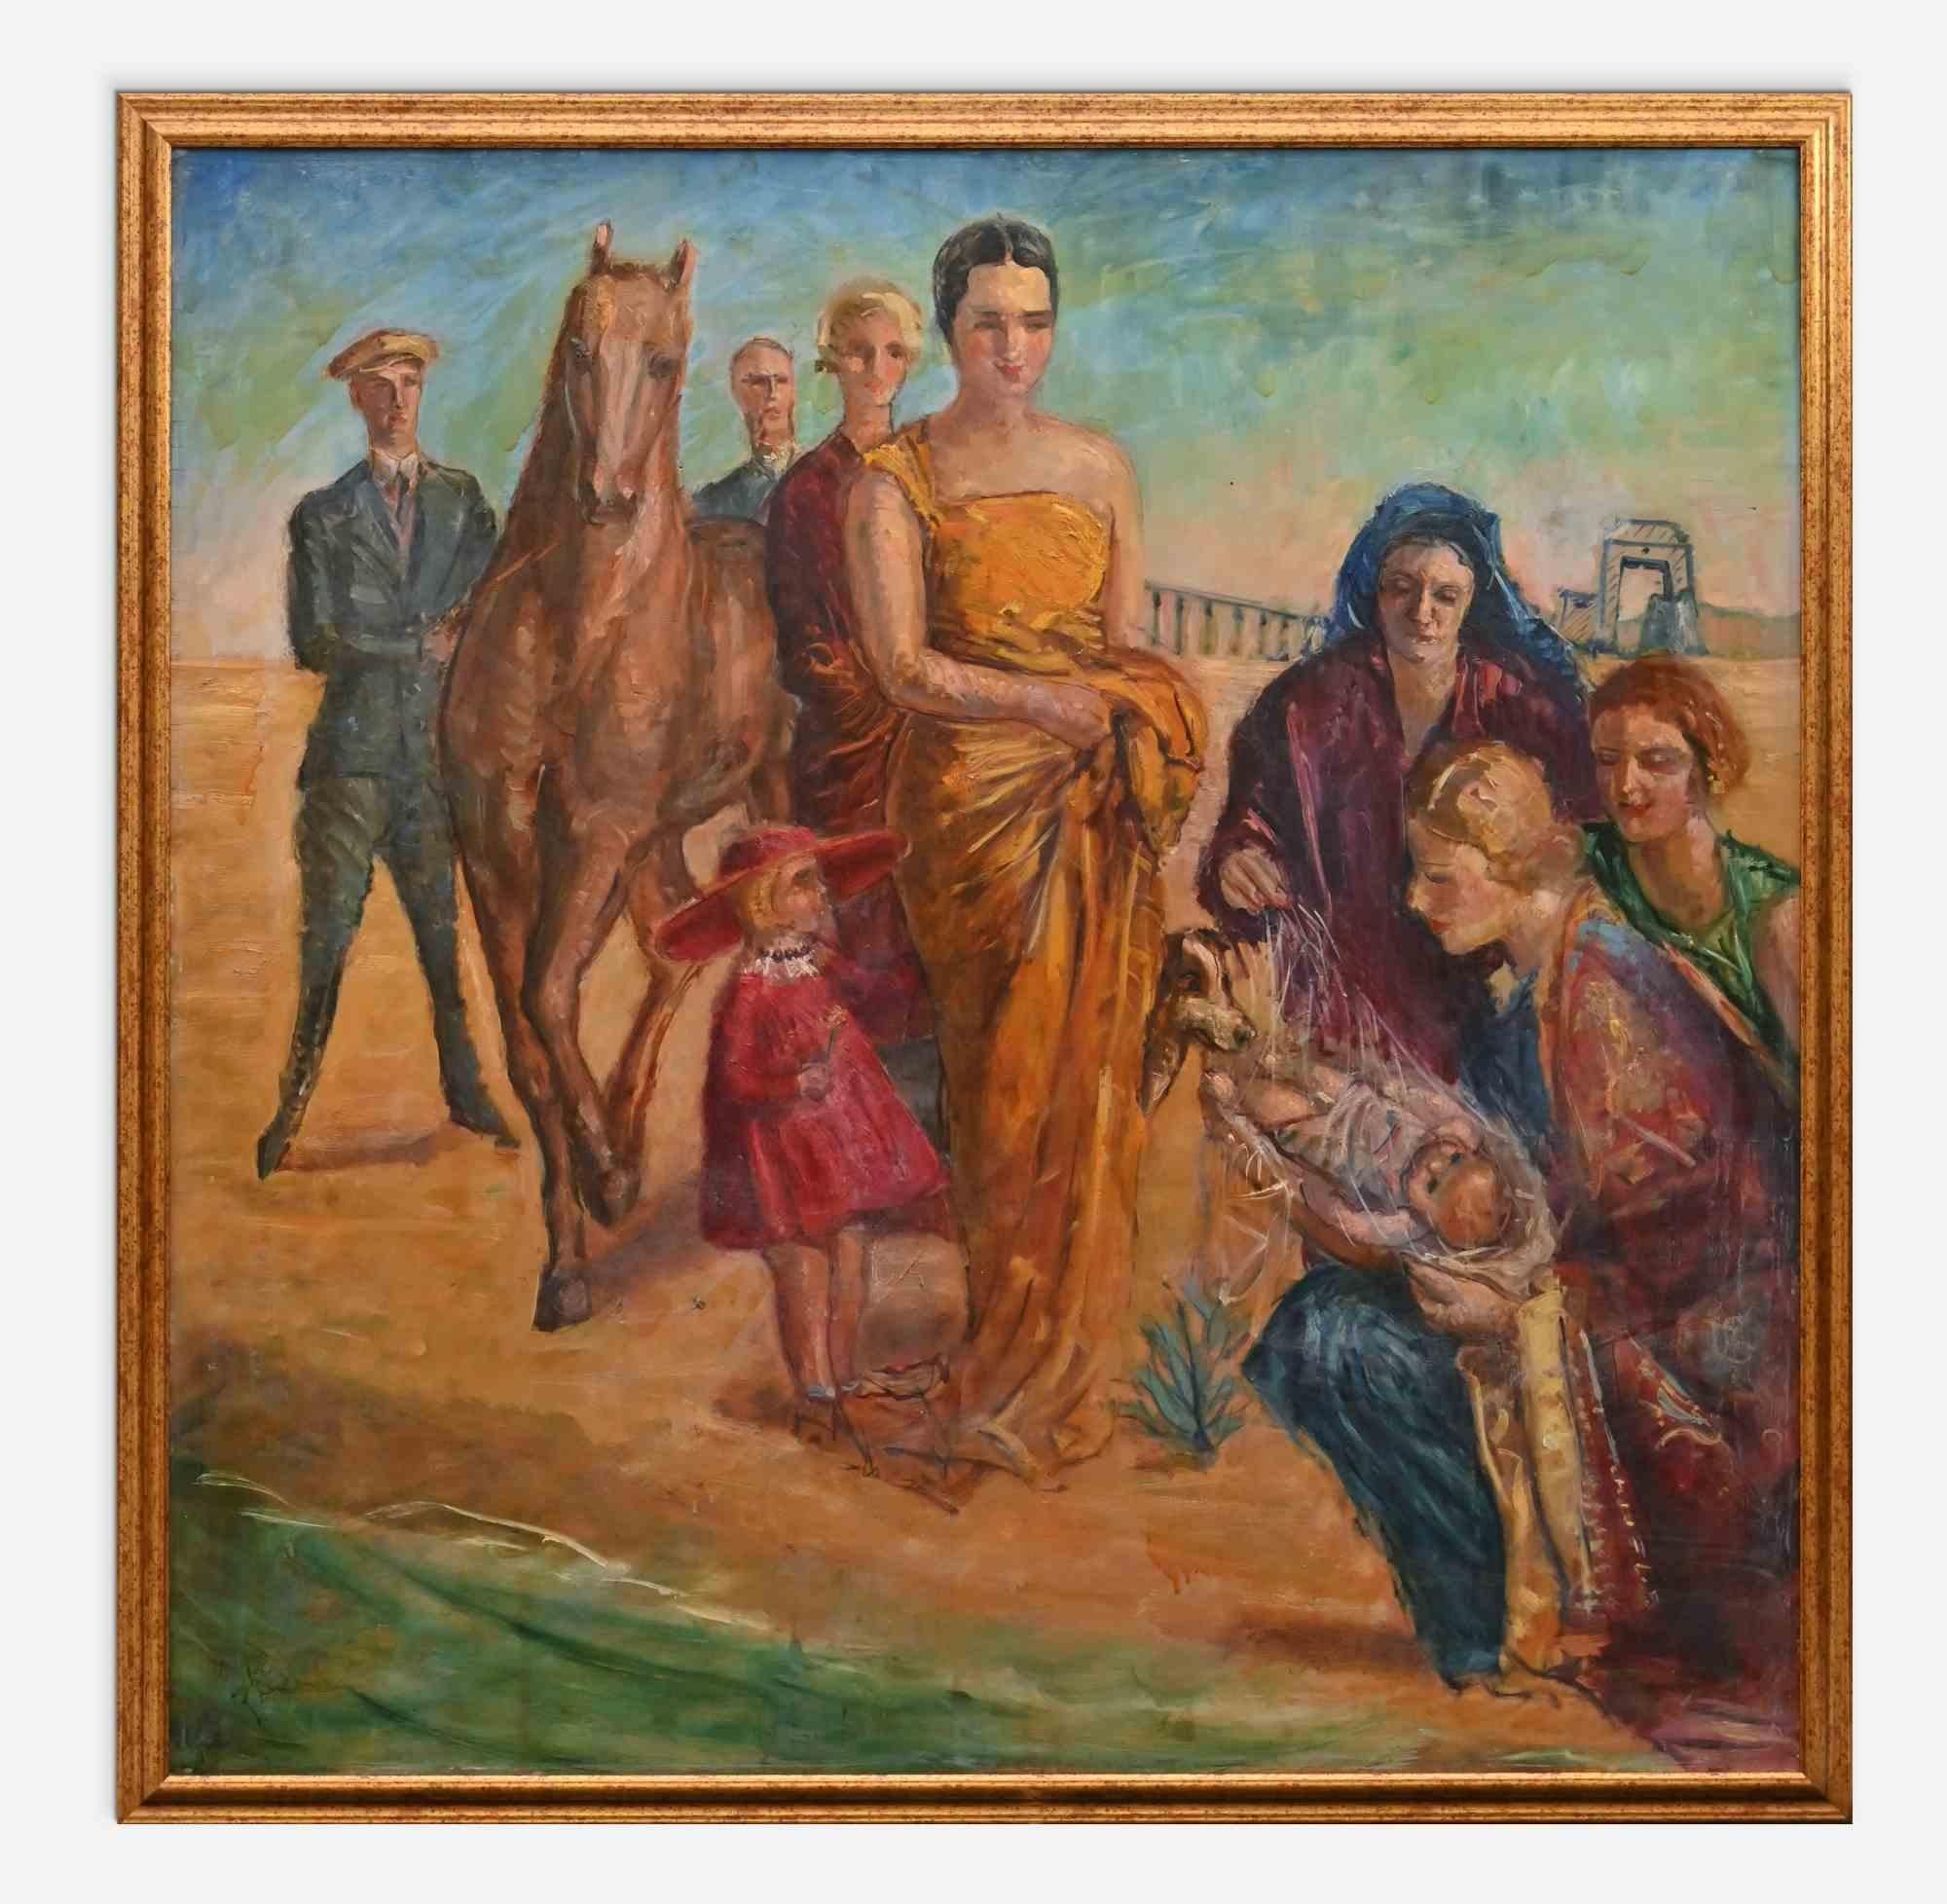 Familie ist ein modernes Kunstwerk von Antonio Feltrinelli aus der Mitte des 20. Jahrhunderts.

Inklusive Rahmen: 136 x 4 x 136 cm

Gemischte farbige Ölgemälde auf Leinwand.


Antonio Feltrinelli (Mailand, 1887 - Gargnano, 1942)
Er wurde am 1. Juni